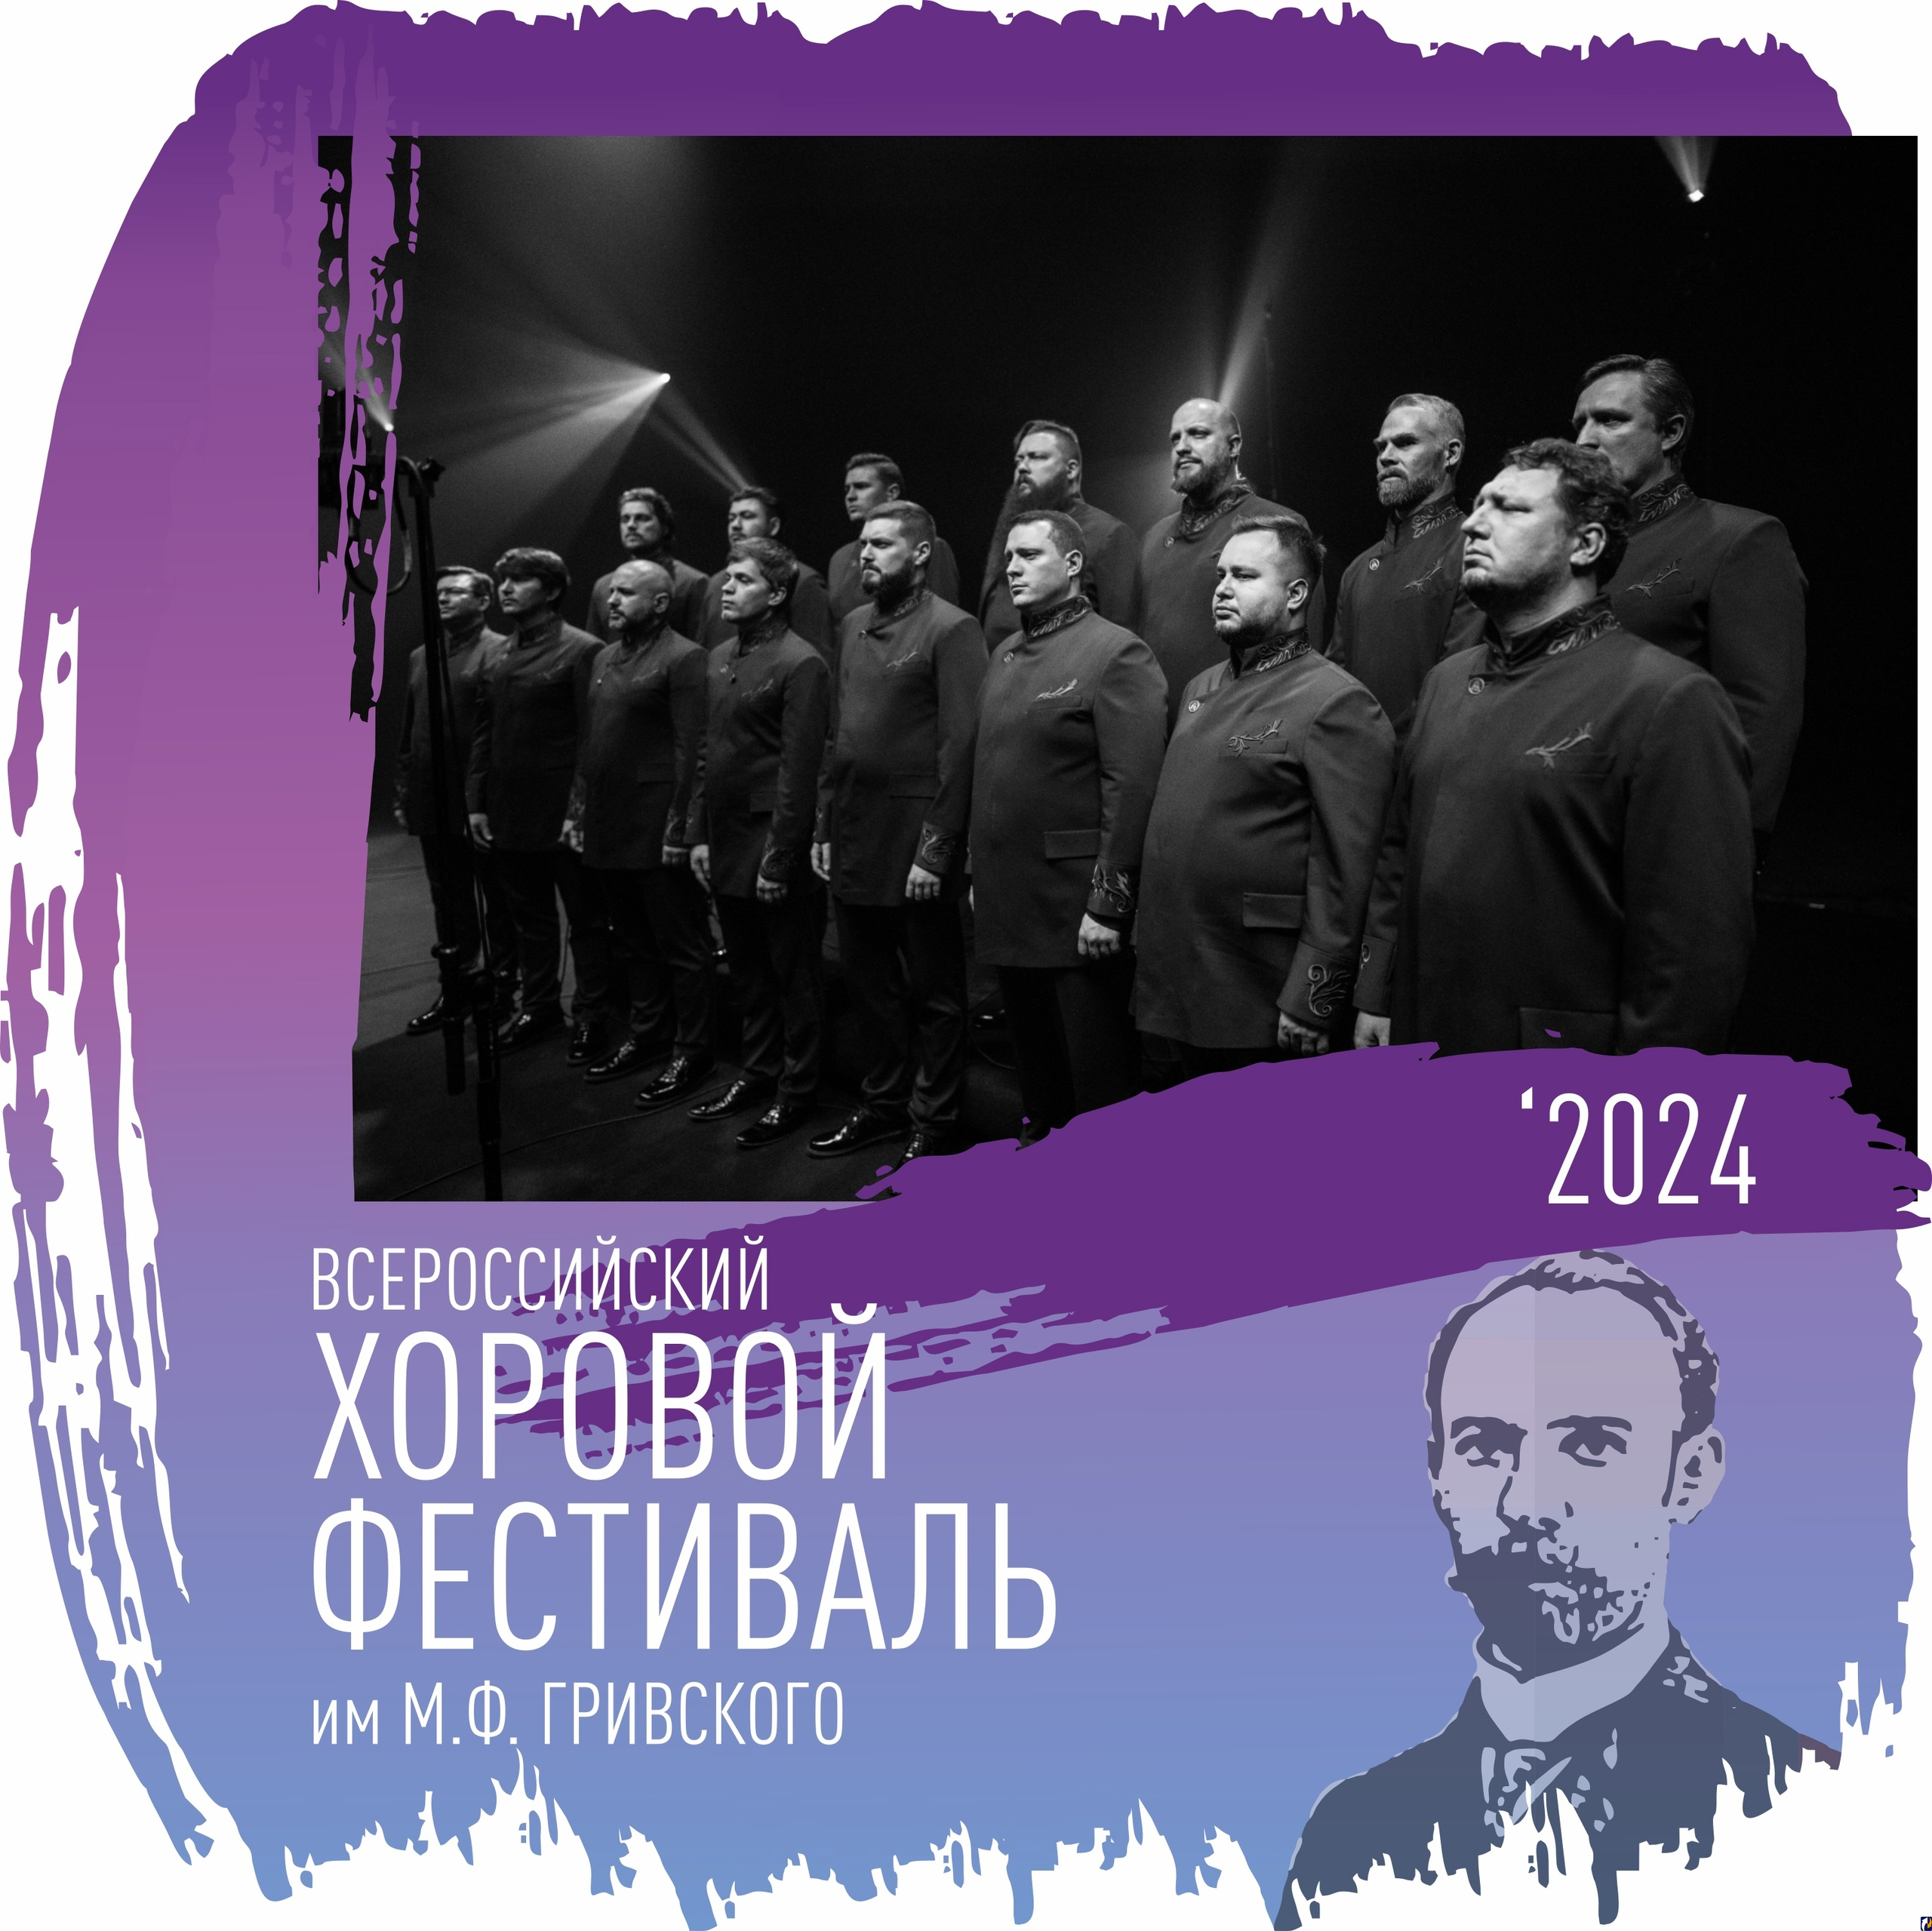 Песню «На заре» исполнит хор Сретенского монастыря на Всероссийском хоровом фестивале имени Гривского